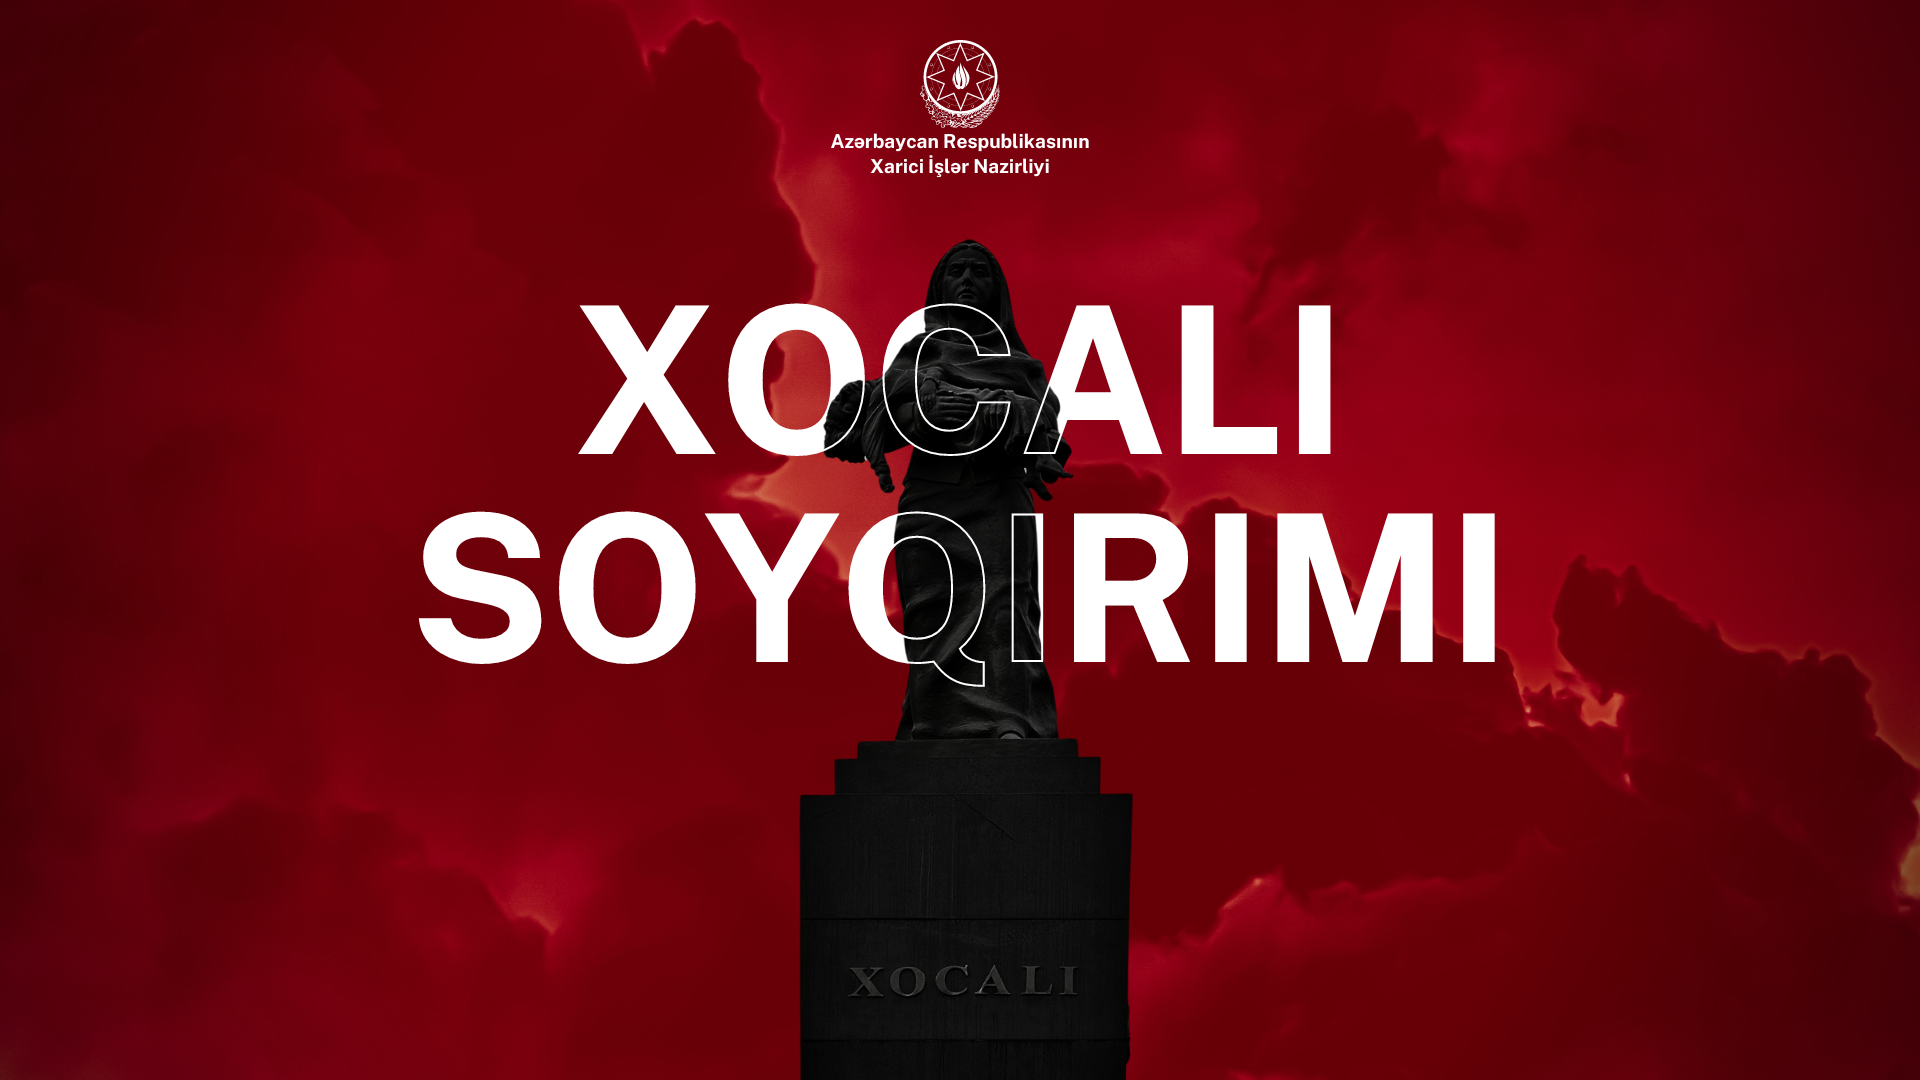 No:070/24, Azərbaycan Respublikasının Xarici İşlər Nazirliyinin Xocalı soyqırımının 32-ci ildönümü ilə bağlı bəyanatı Xeber basligi